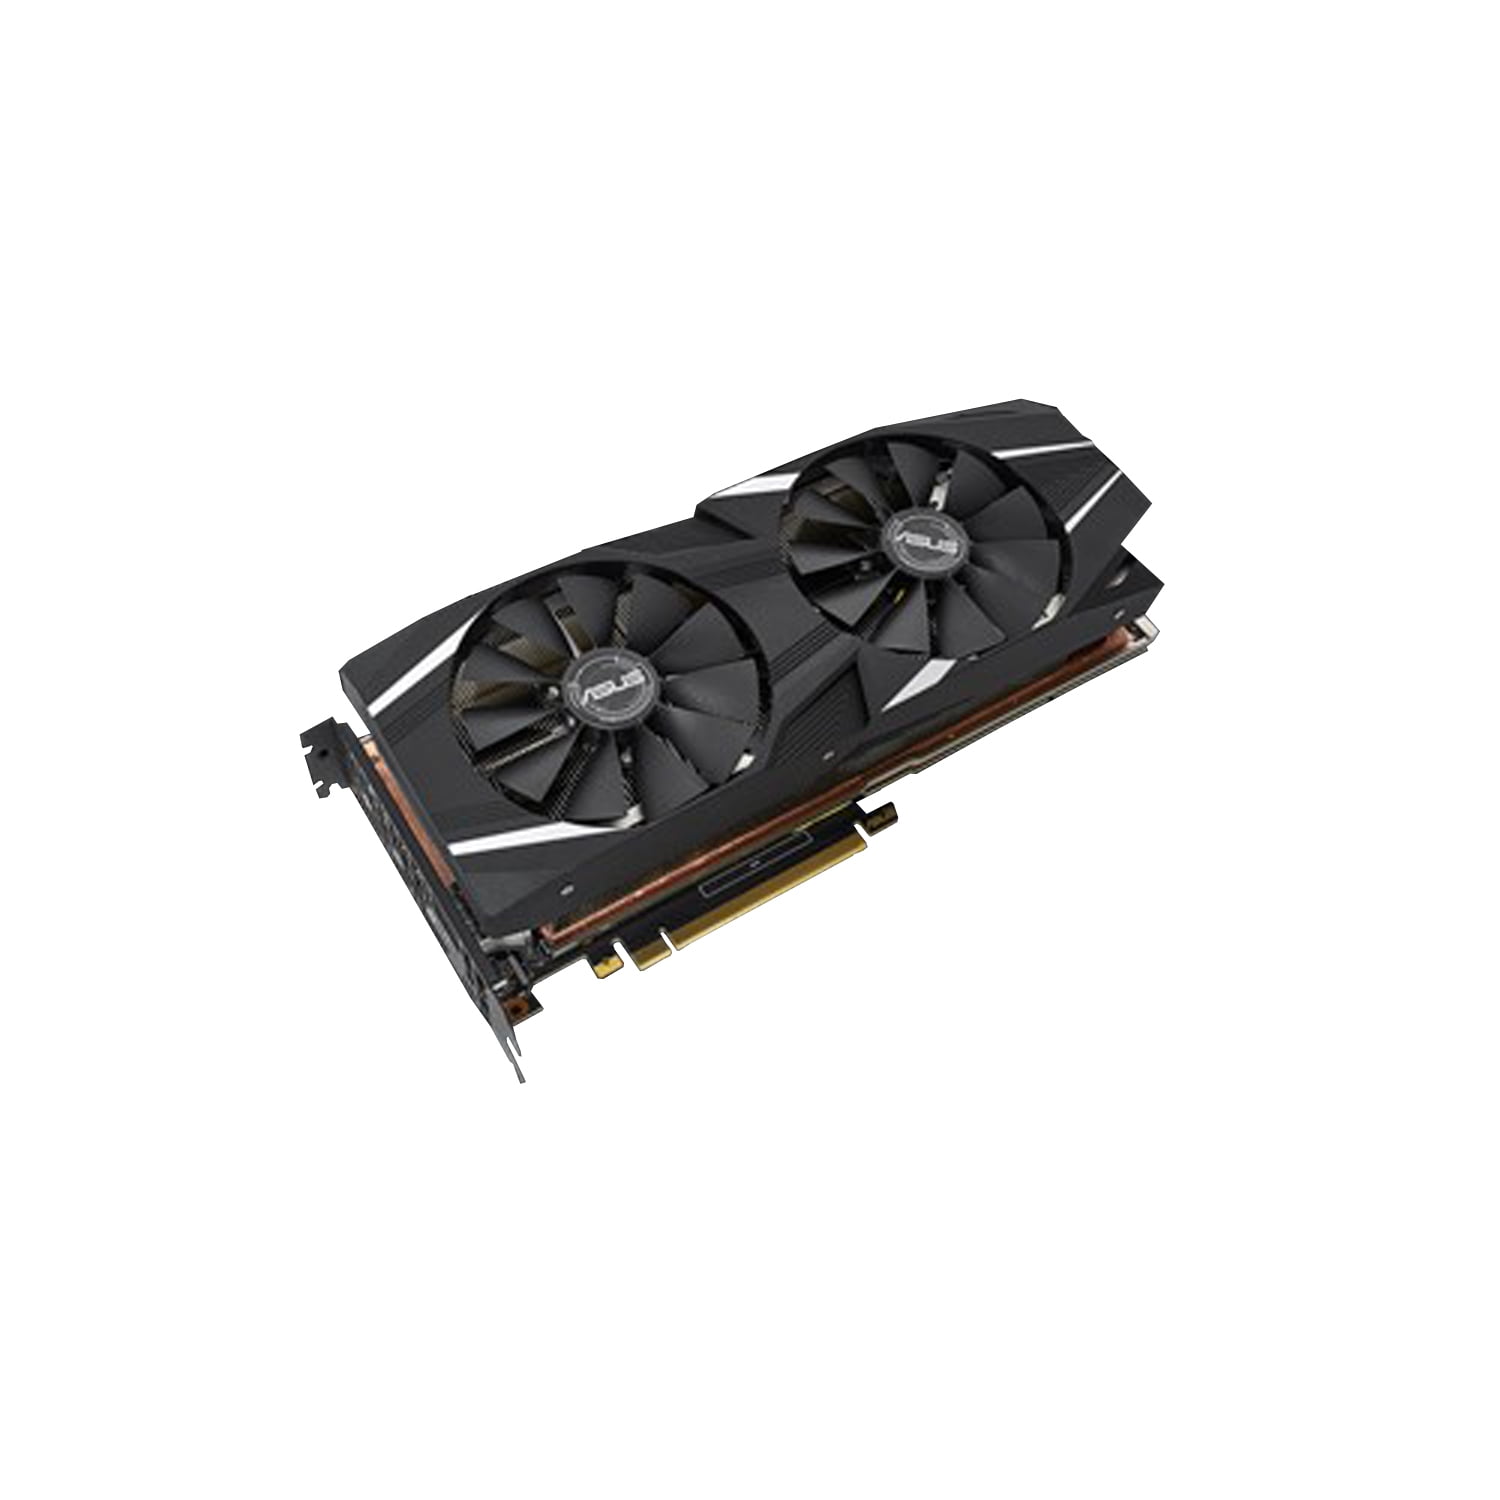 GeForce RTX 2080 Ti Dual Fan Card, Black